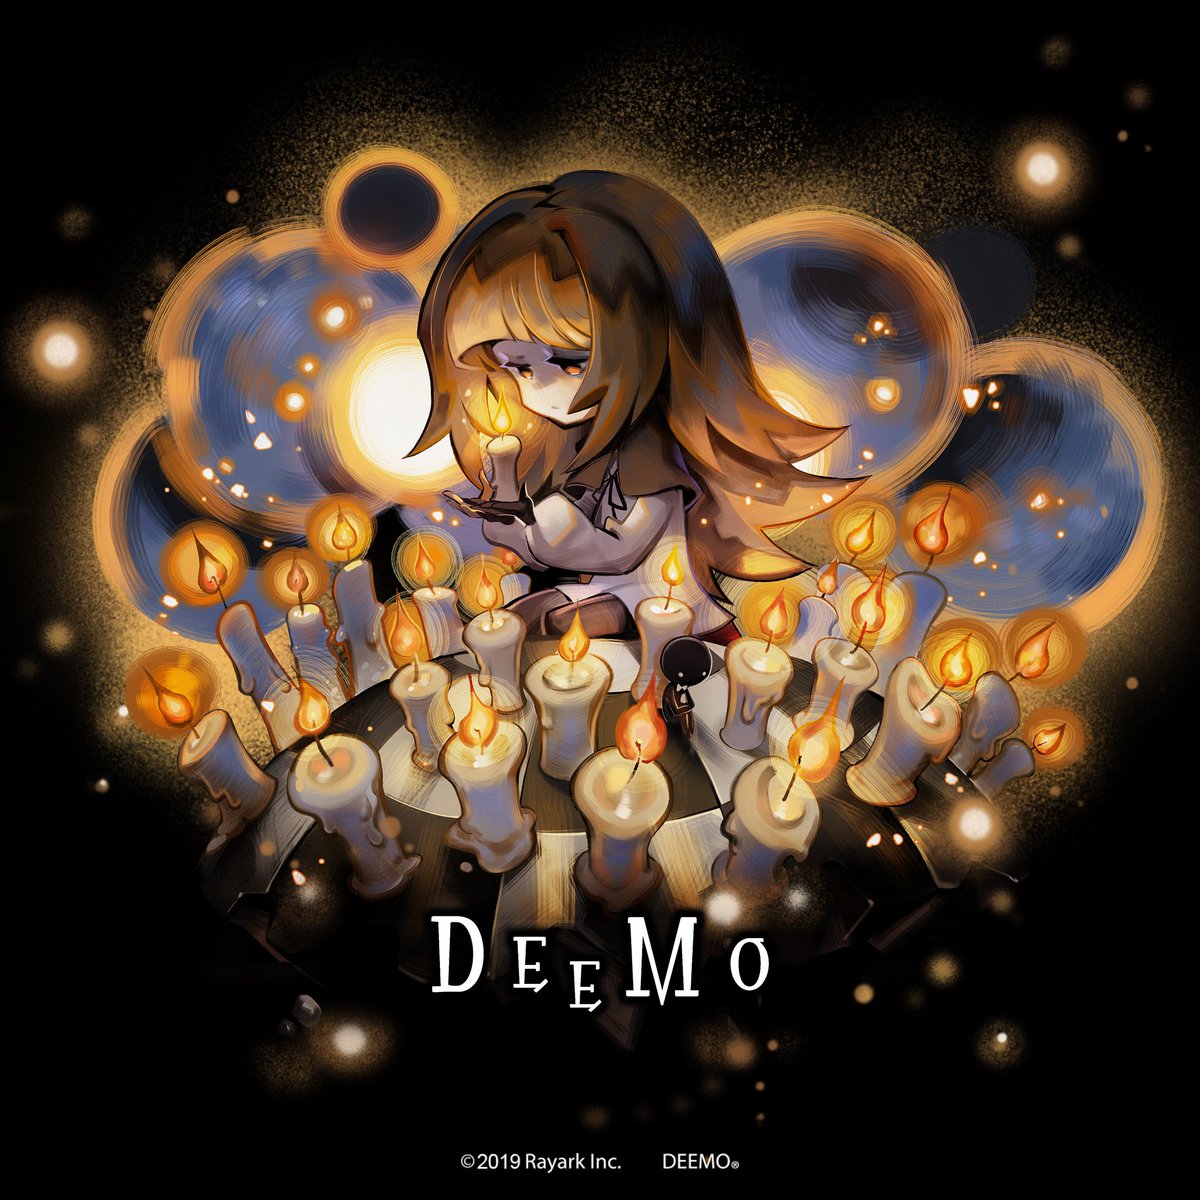 Deemo 公式 Deemo 3 4 新規追加 コレクション Shattered Memories に無料楽曲を2曲追加しました 新規追加 有料の楽曲パックbook Of Alice Book Of Celia より快適にお楽しみ頂くため Uiを最適化しました 6 23 日 00 59 限定セールを実施